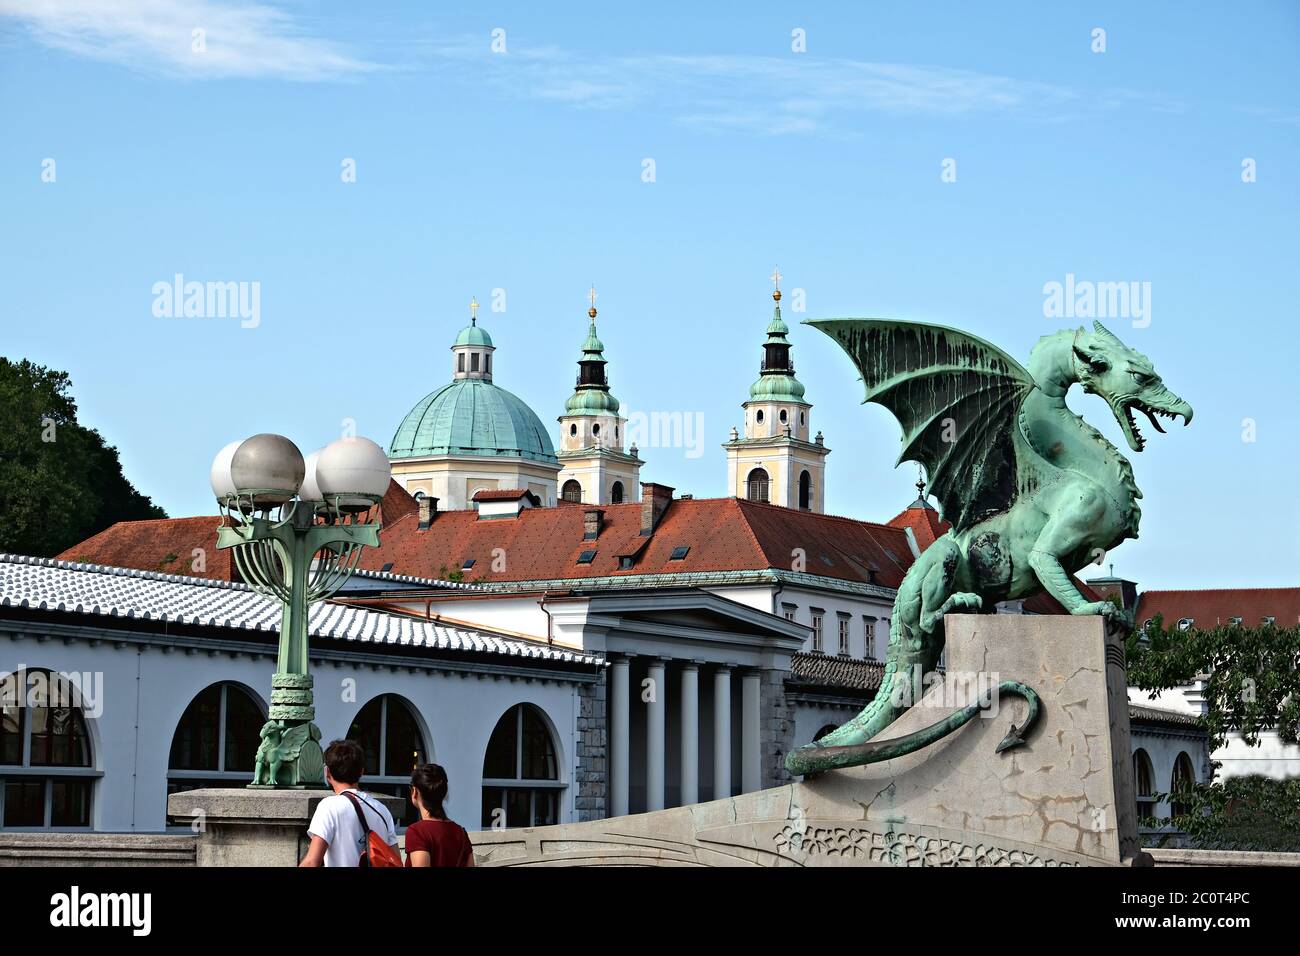 Les statues du Dragon au pont du Dragon et à la cathédrale Saint-Nicolas en arrière-plan, au centre de la ville de Ljubljana Banque D'Images